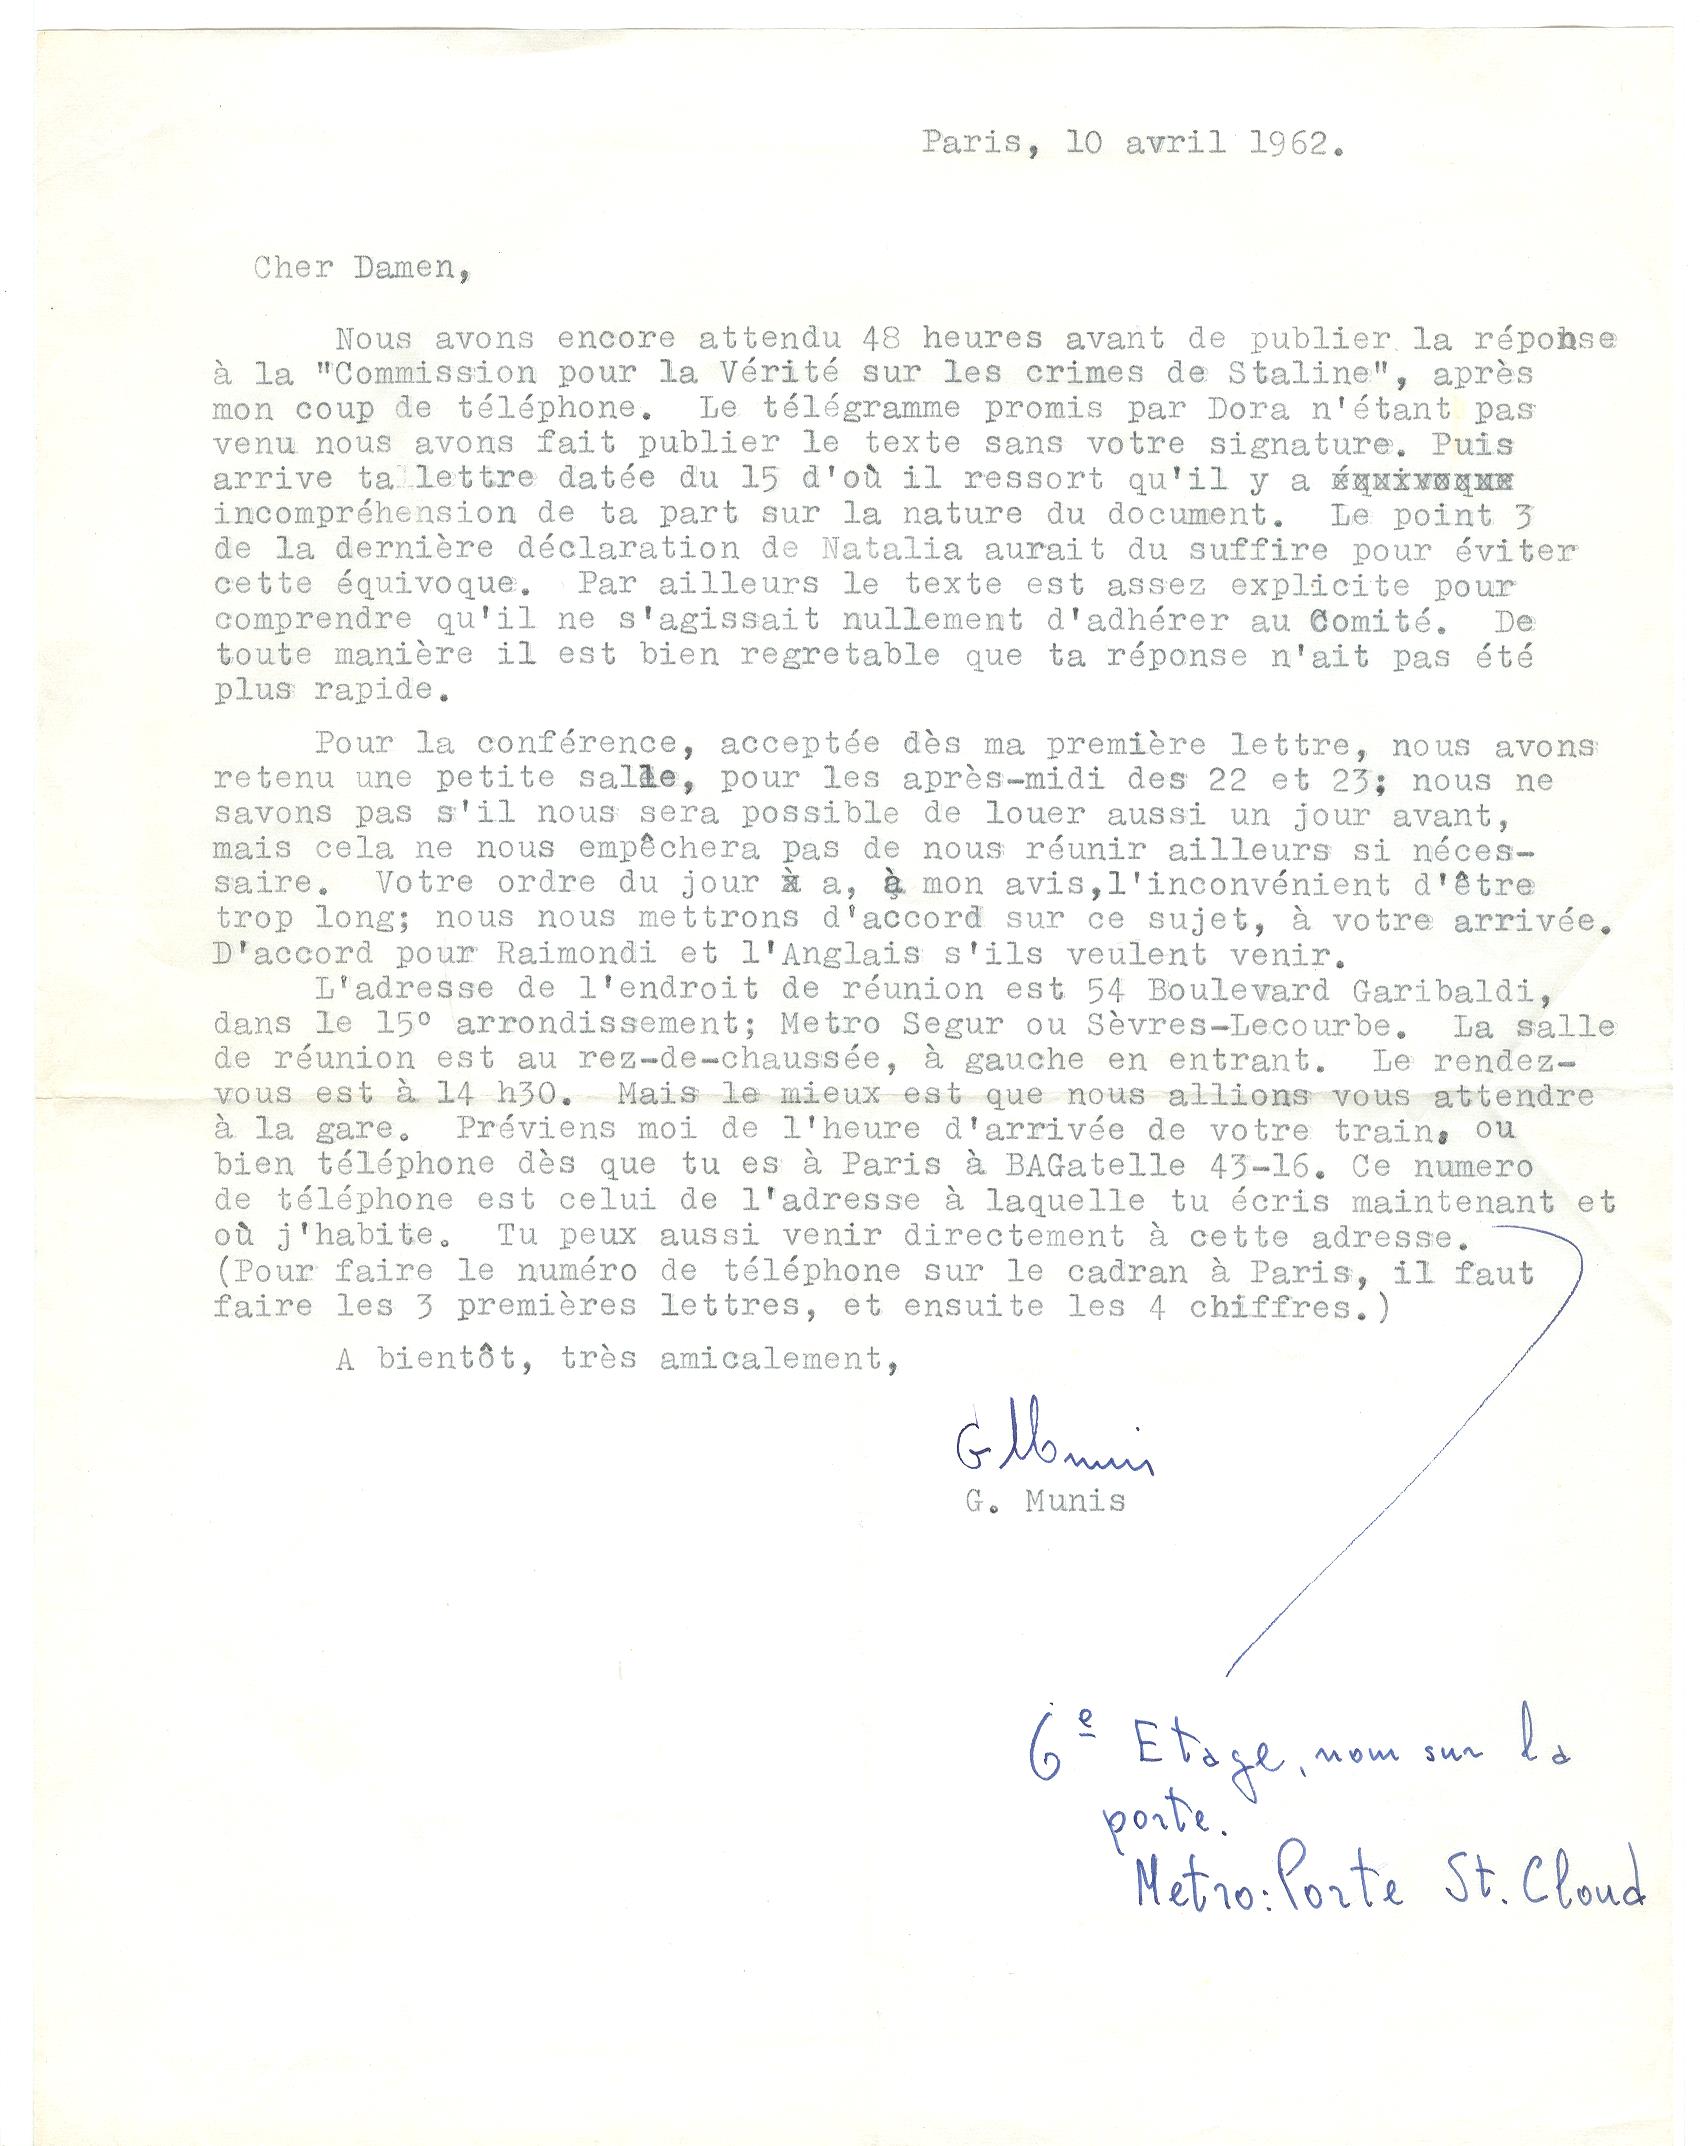 06 >> 4 - Lettera di Munis a Onorato Damen (10 aprile 1962)